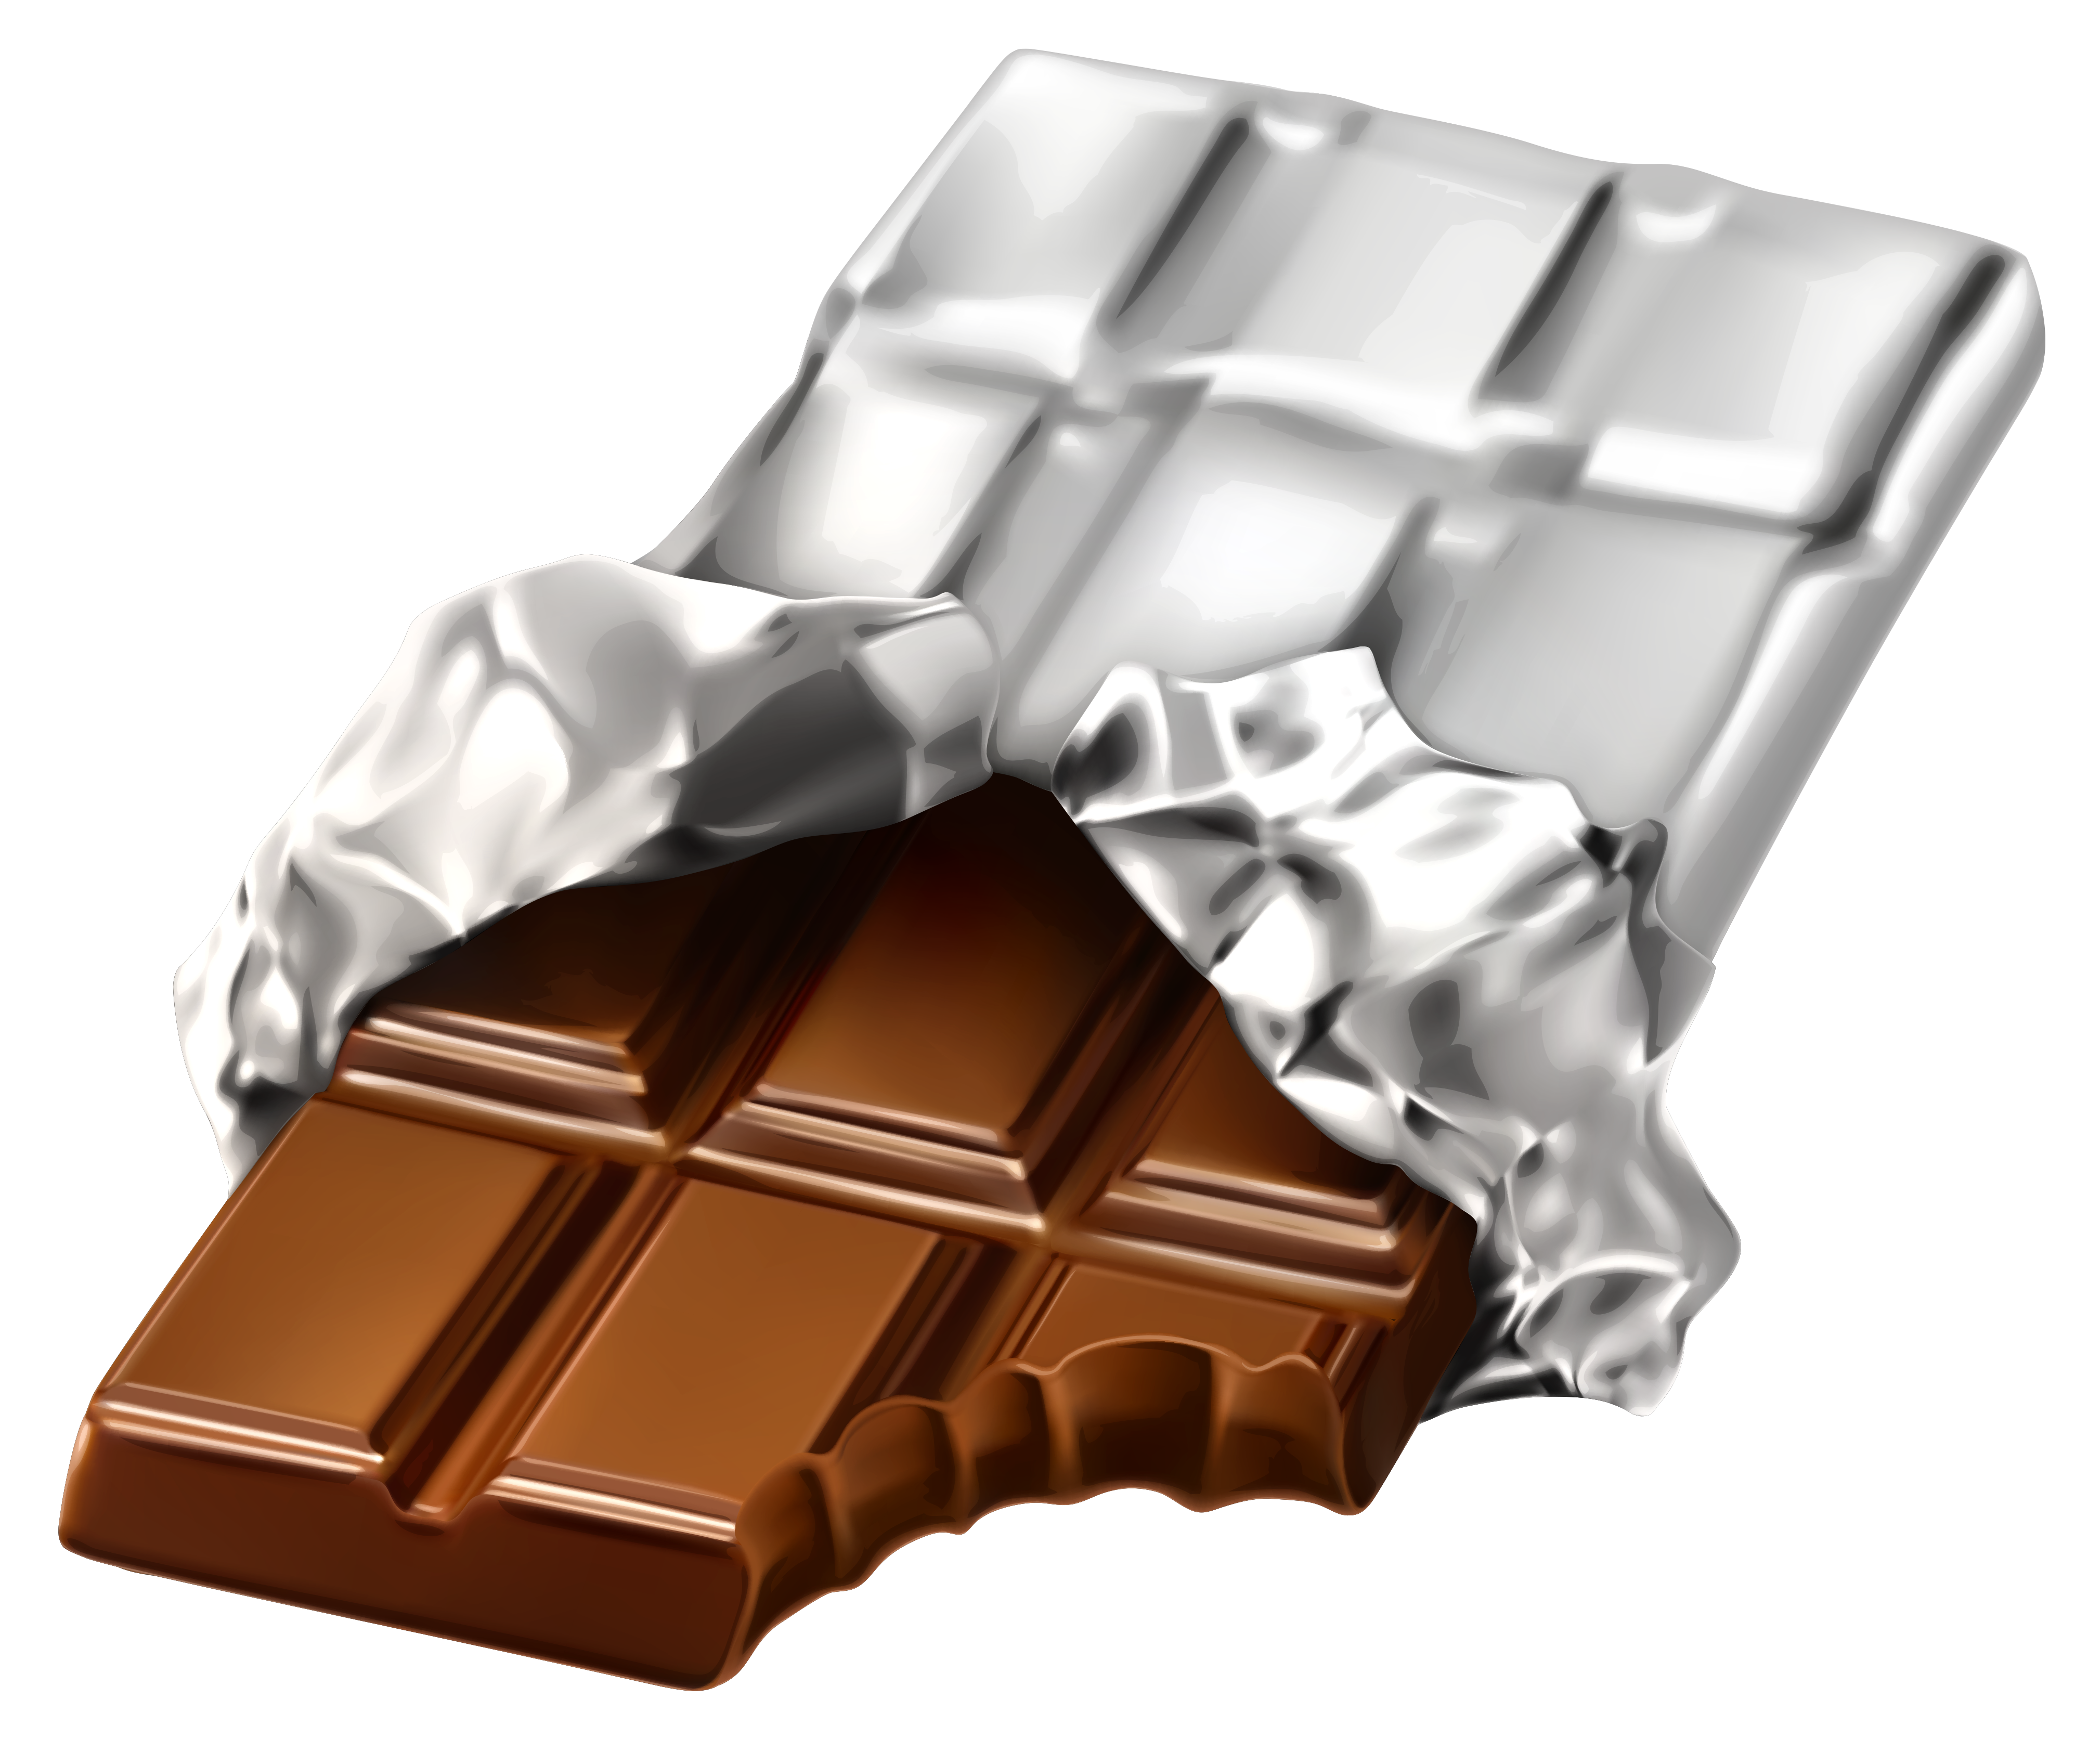 Imagenes De Chocolate